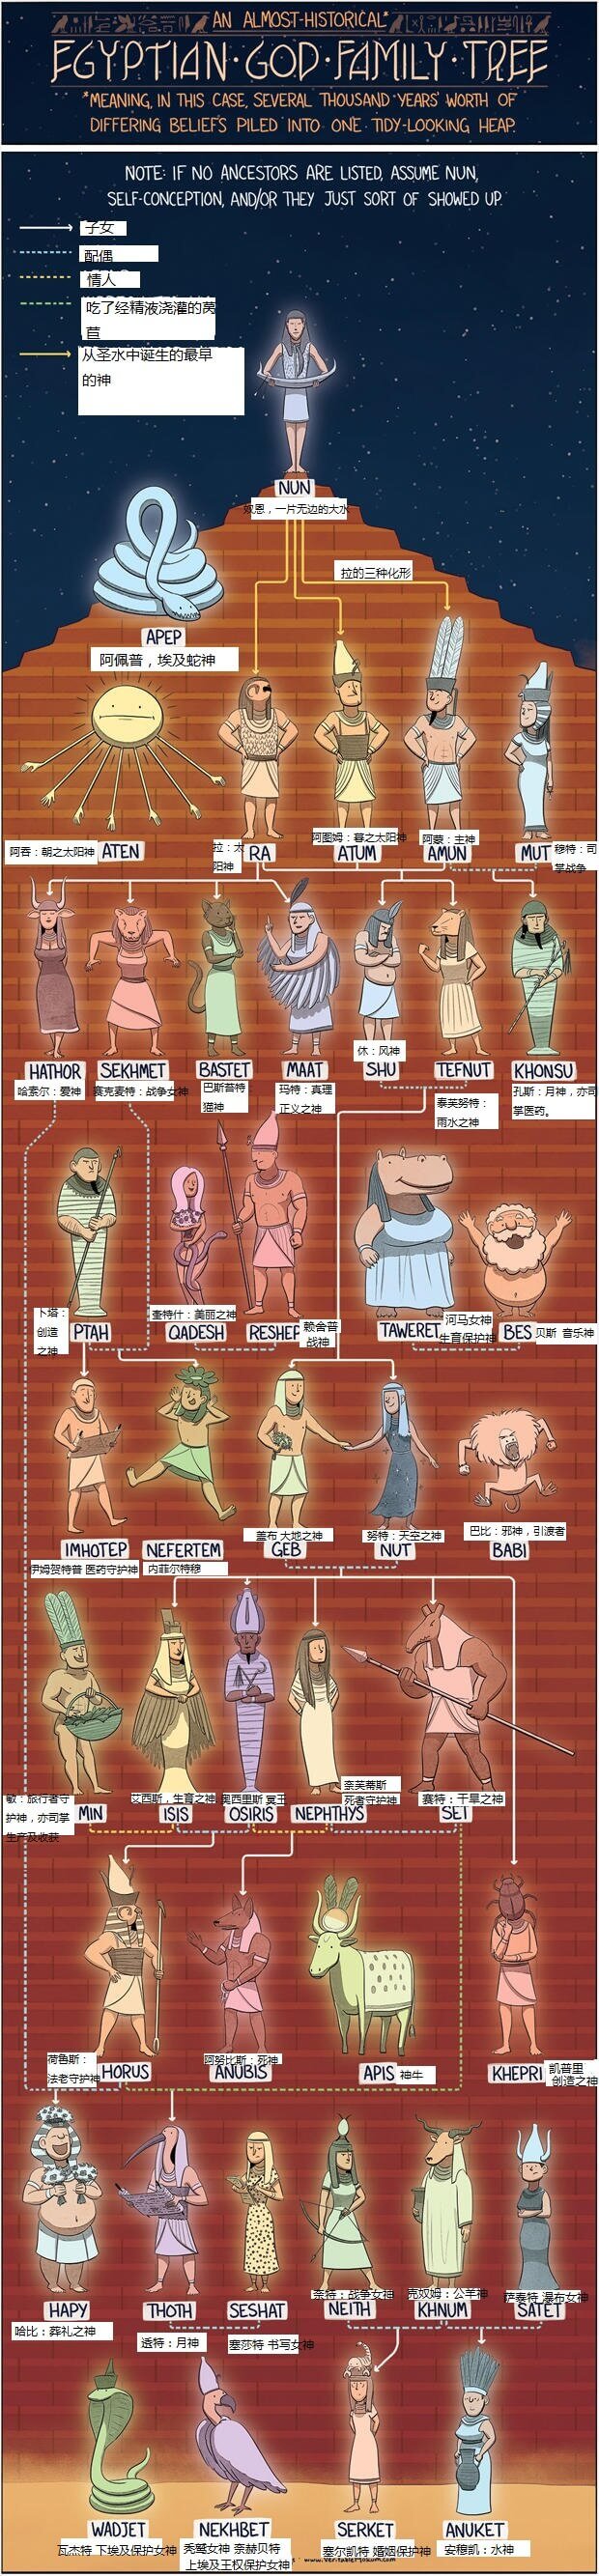 古埃及神话众神图谱